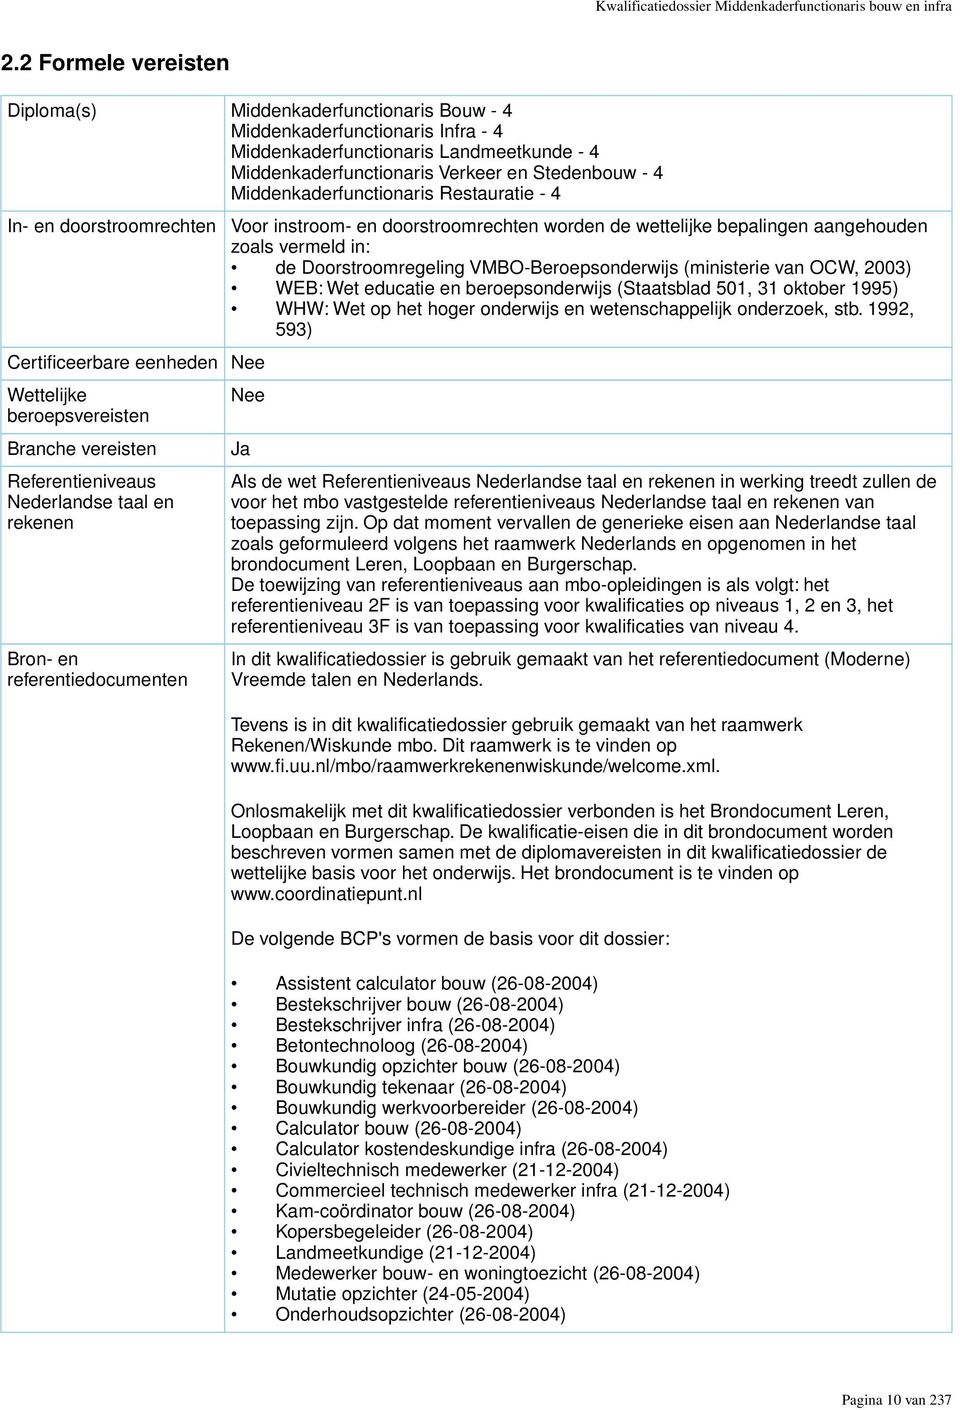 Middenkaderfunctionaris Restauratie - 4 In- en doorstroomrechten Certificeerbare eenheden Nee Wettelijke beroepsvereisten Branche vereisten Referentieniveaus Nederlandse taal en rekenen Bron- en